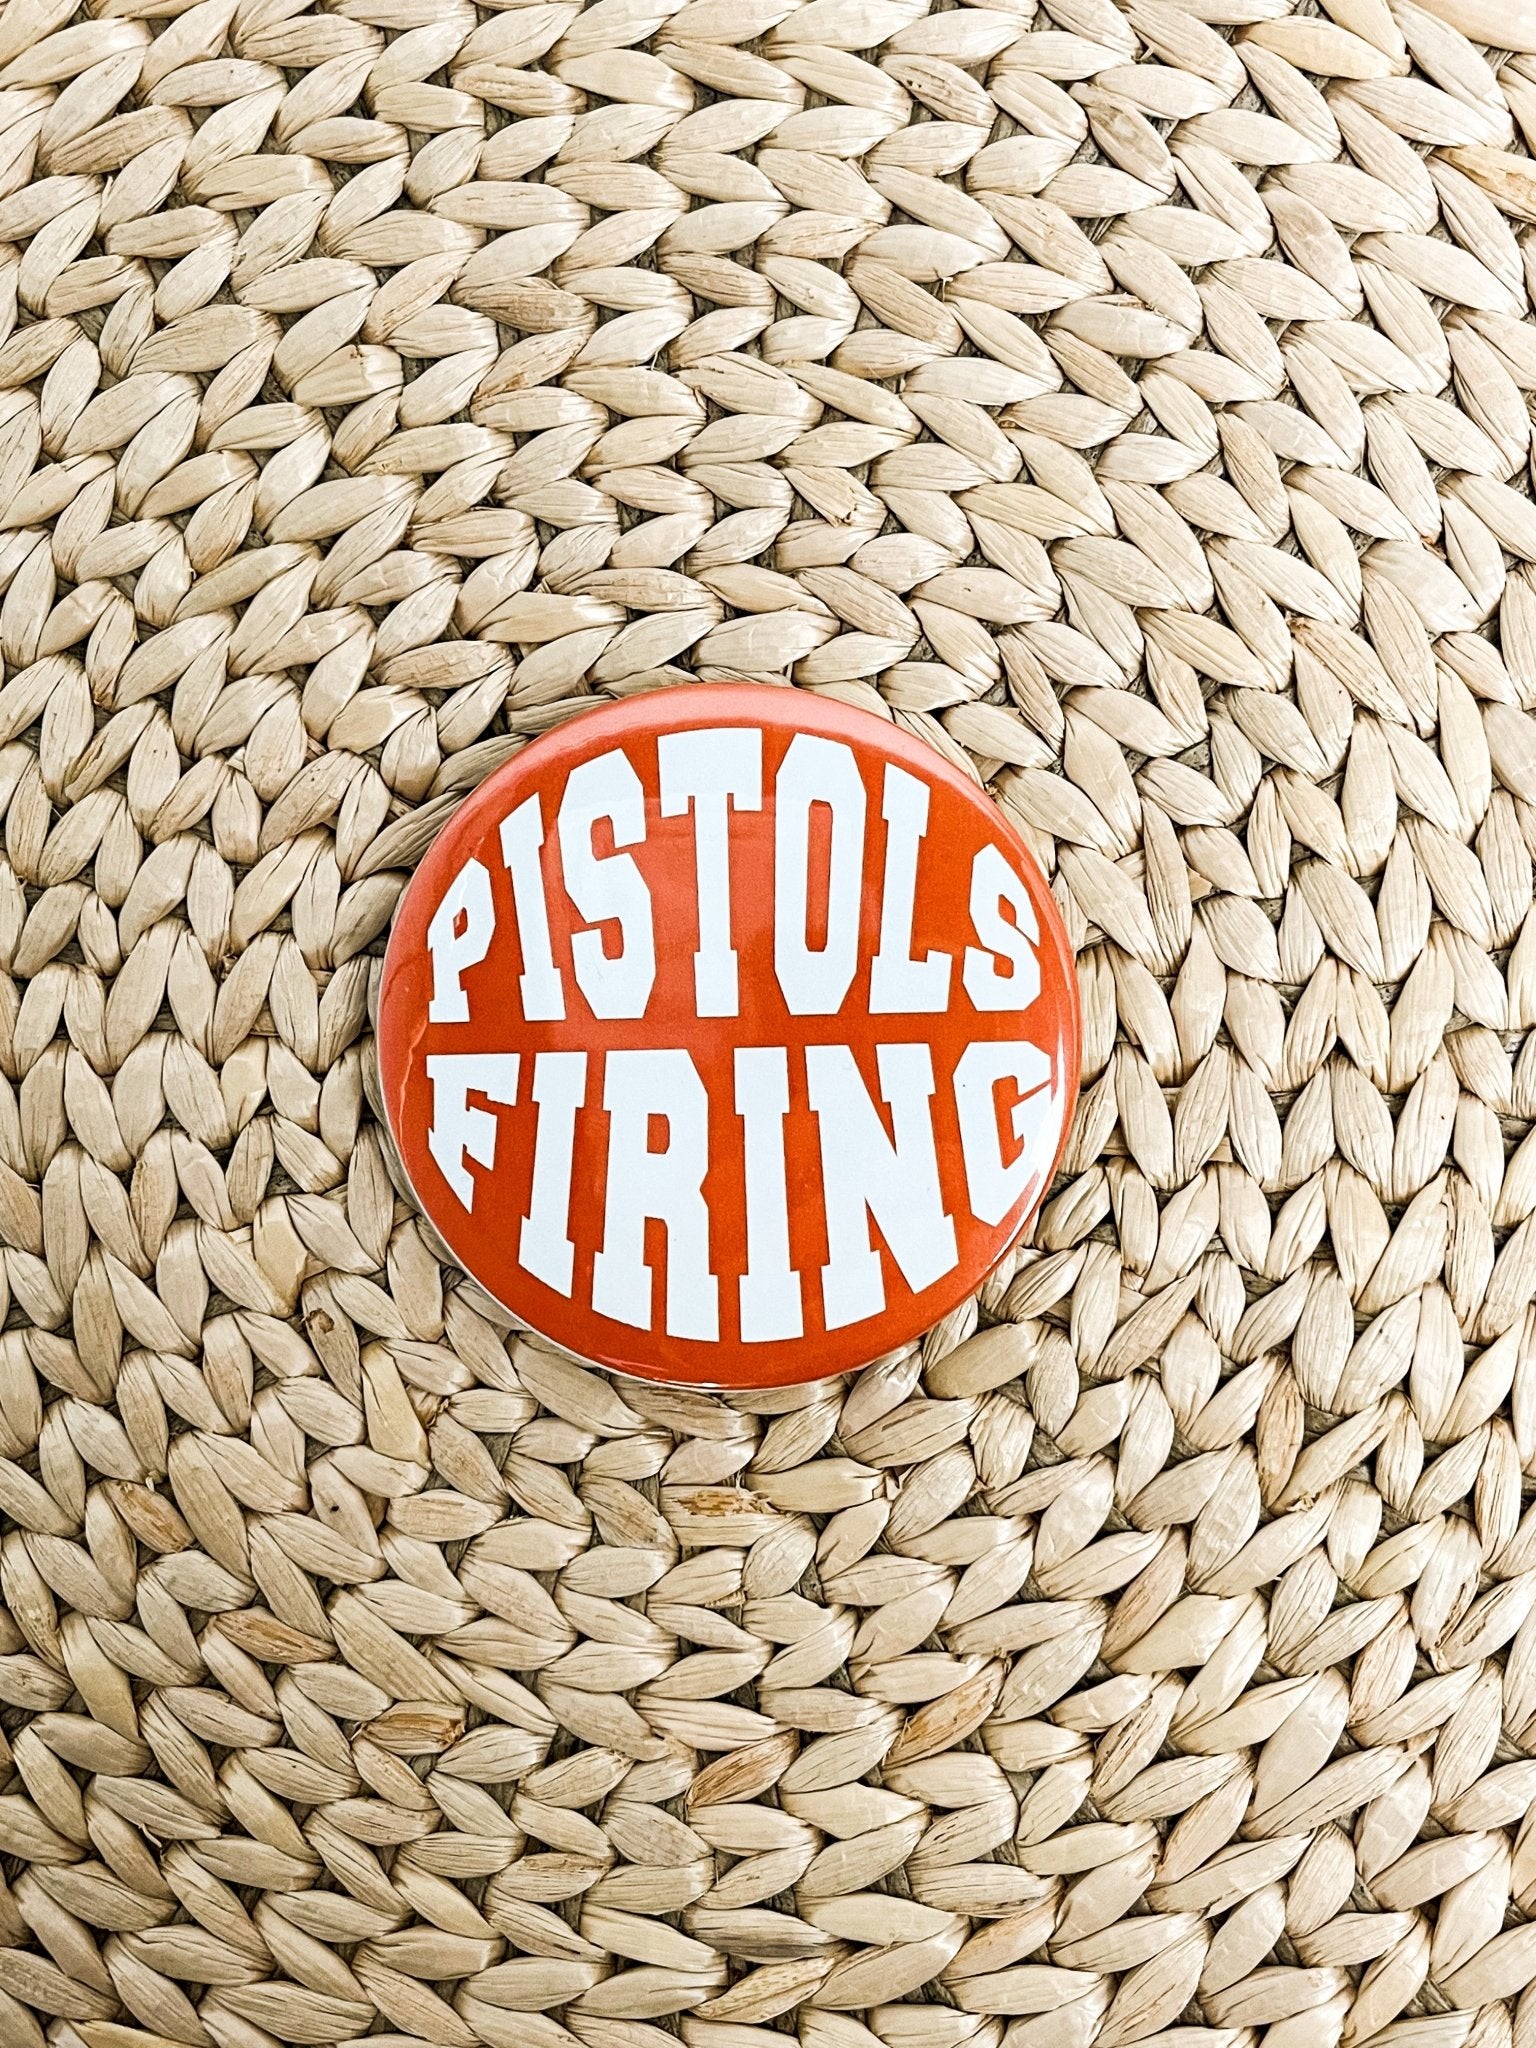 Pistols Firing 2.25 inch game day button orange